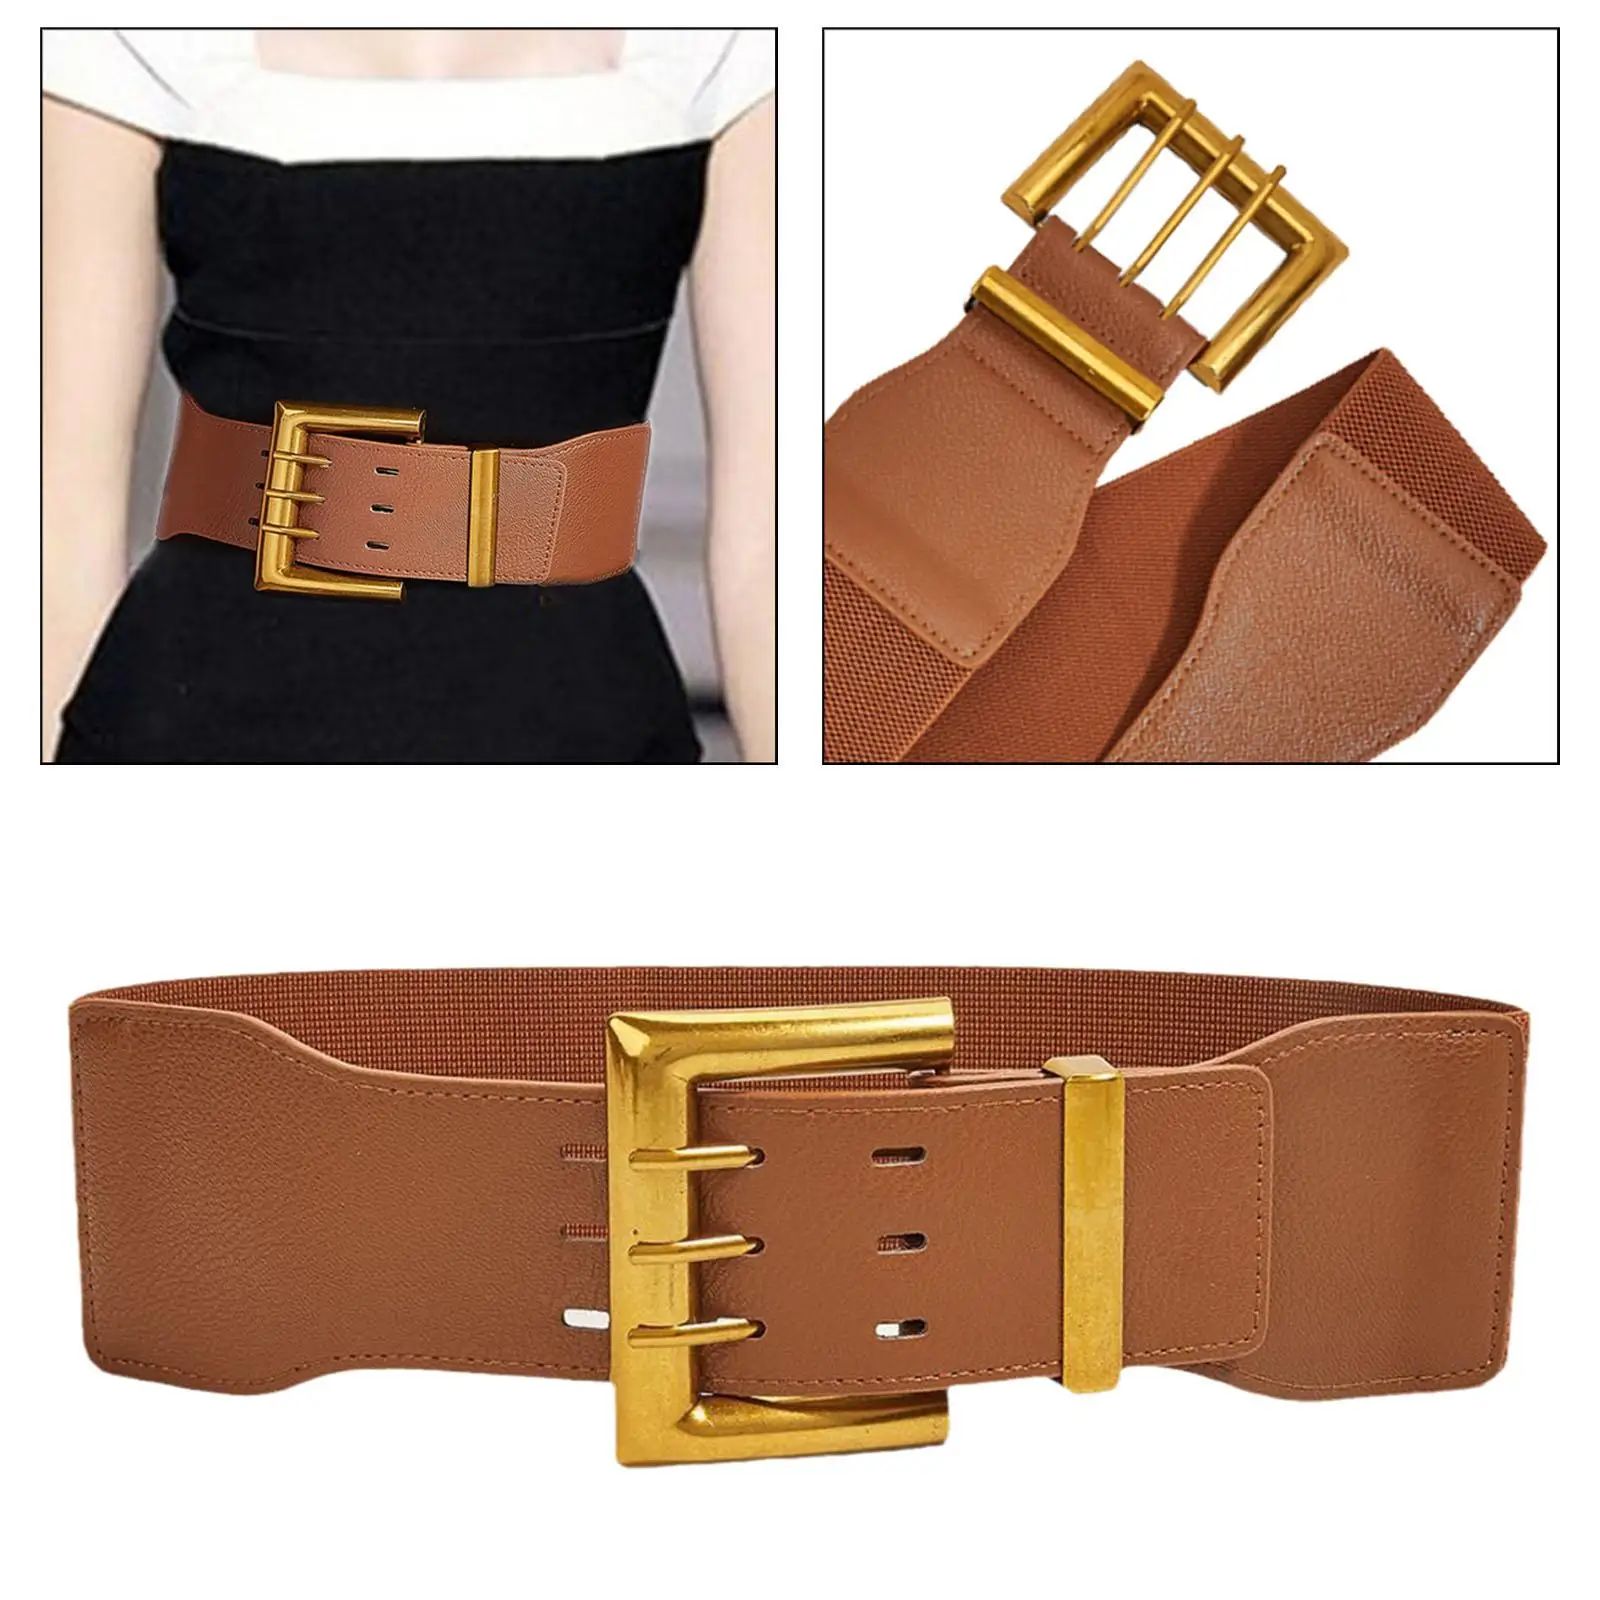 Wide Elastic Belt for Women Dress Belt Cinch Belt Stretch Waist Belt Waistband for Female Girls Lady Clothing Accessories